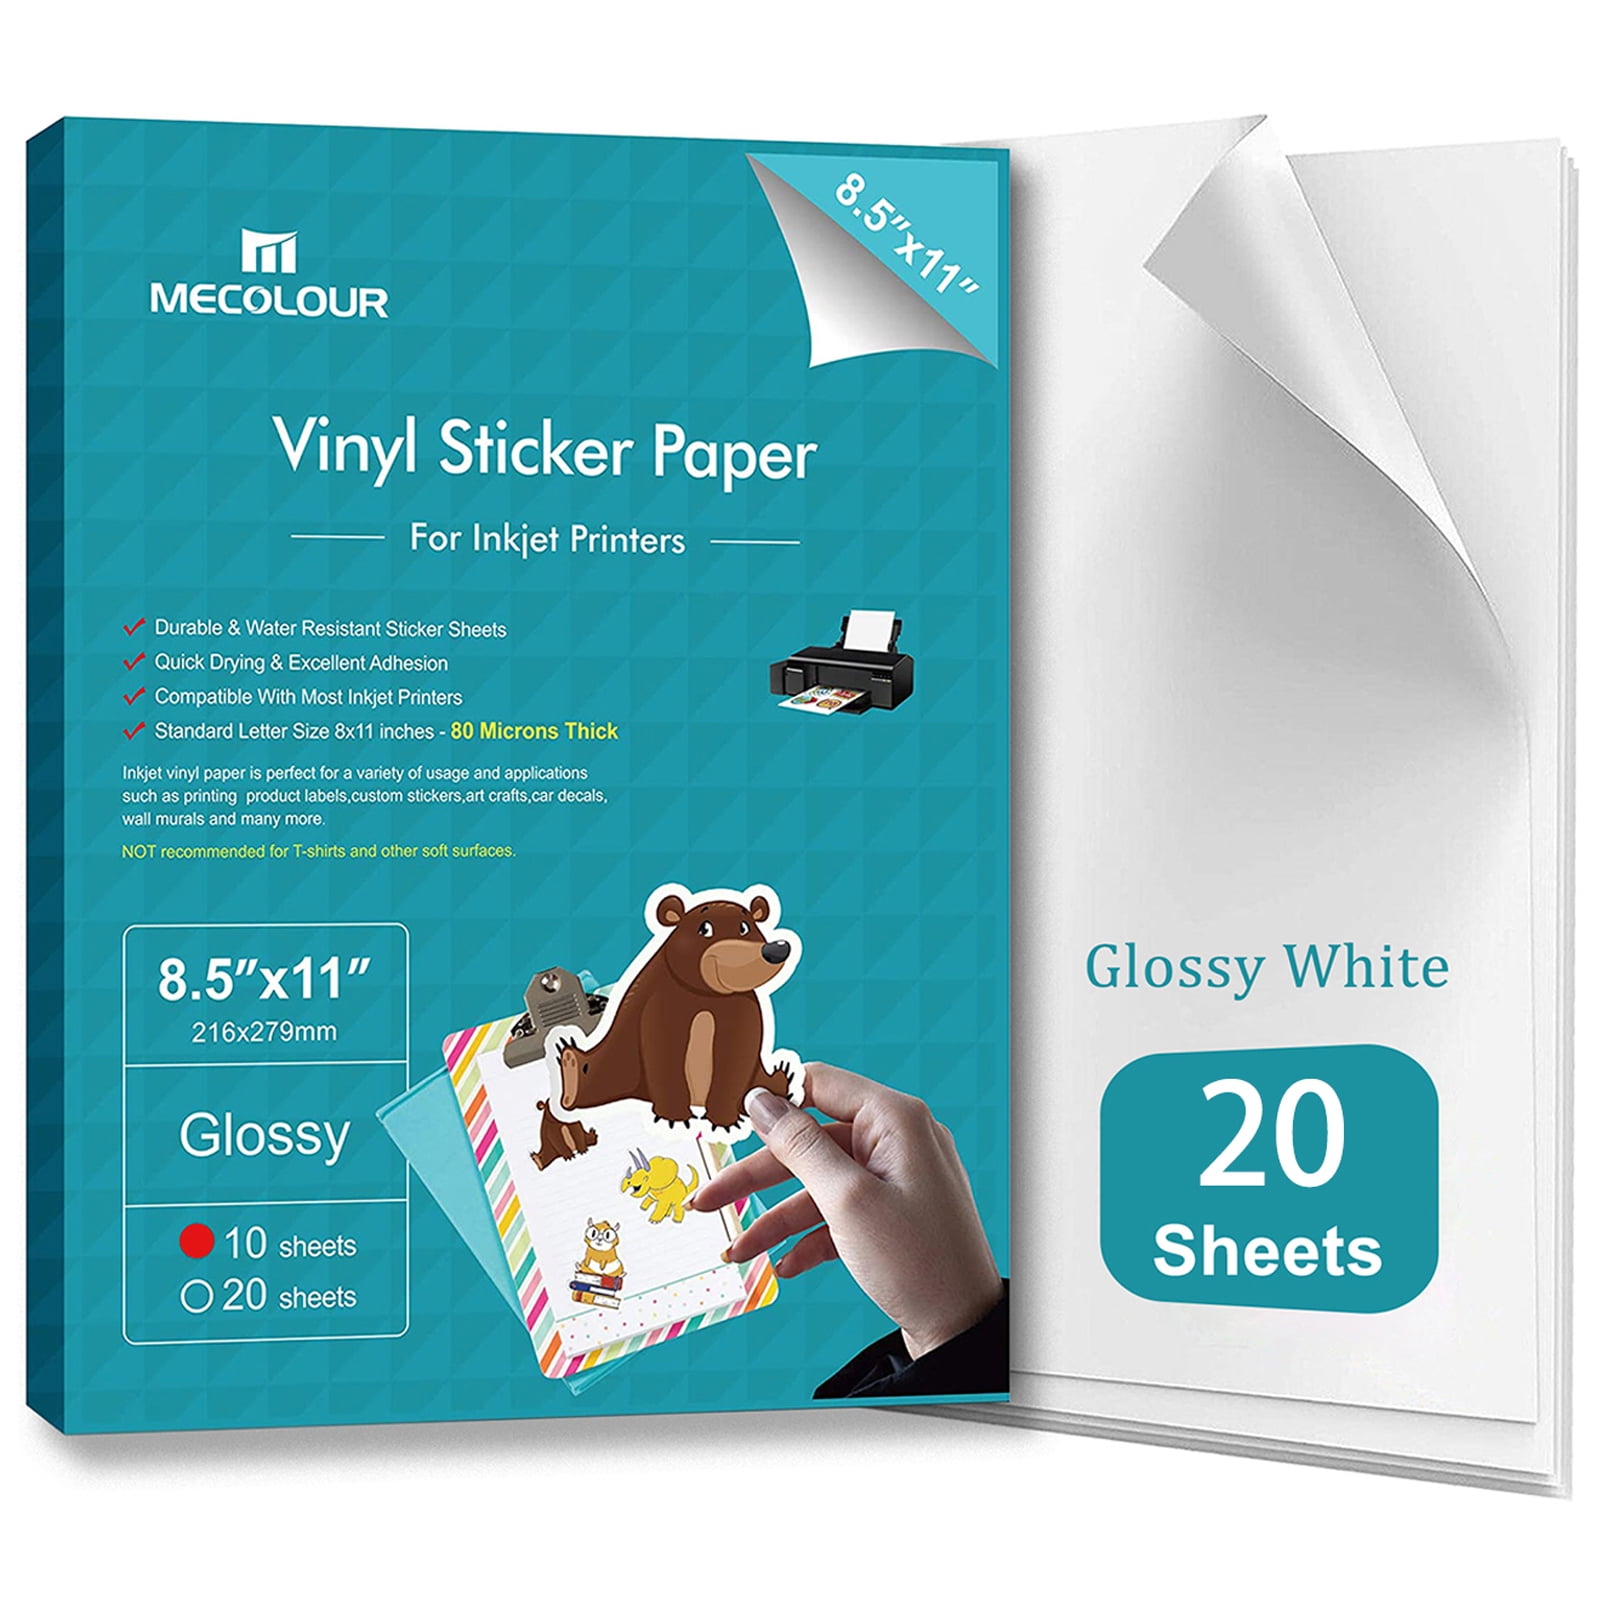 Printable Vinyl Sticker Paper for Inkjet Printer Glossy White 50 Pack Printable Vinyl Standard Letter Size 8.5x11 